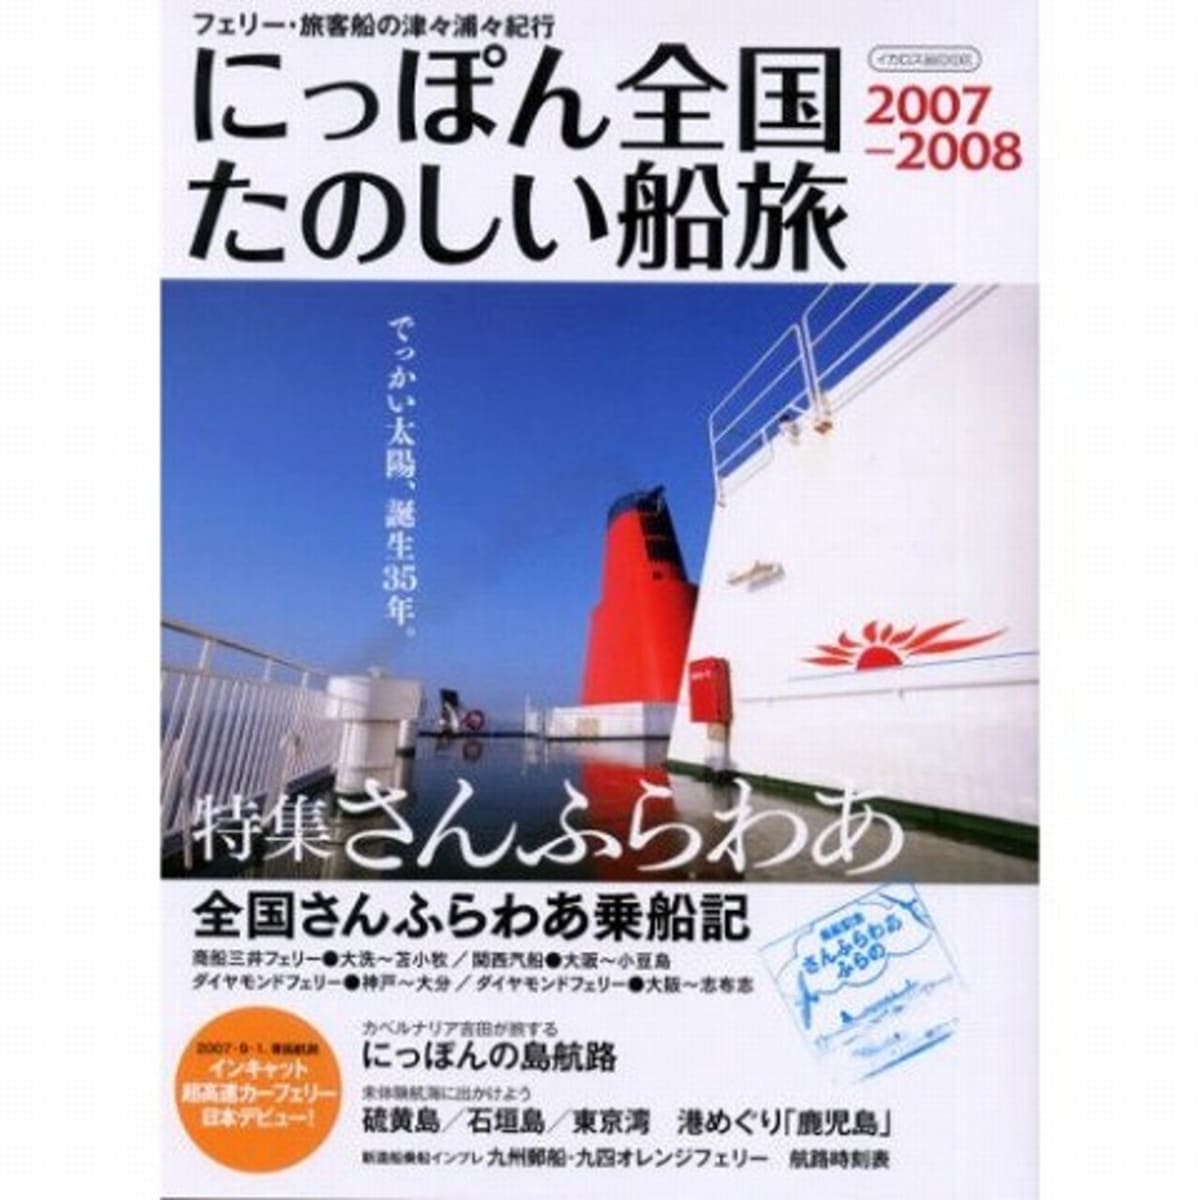 船の本 「にっぽん全国たのしい船旅2007-2008」